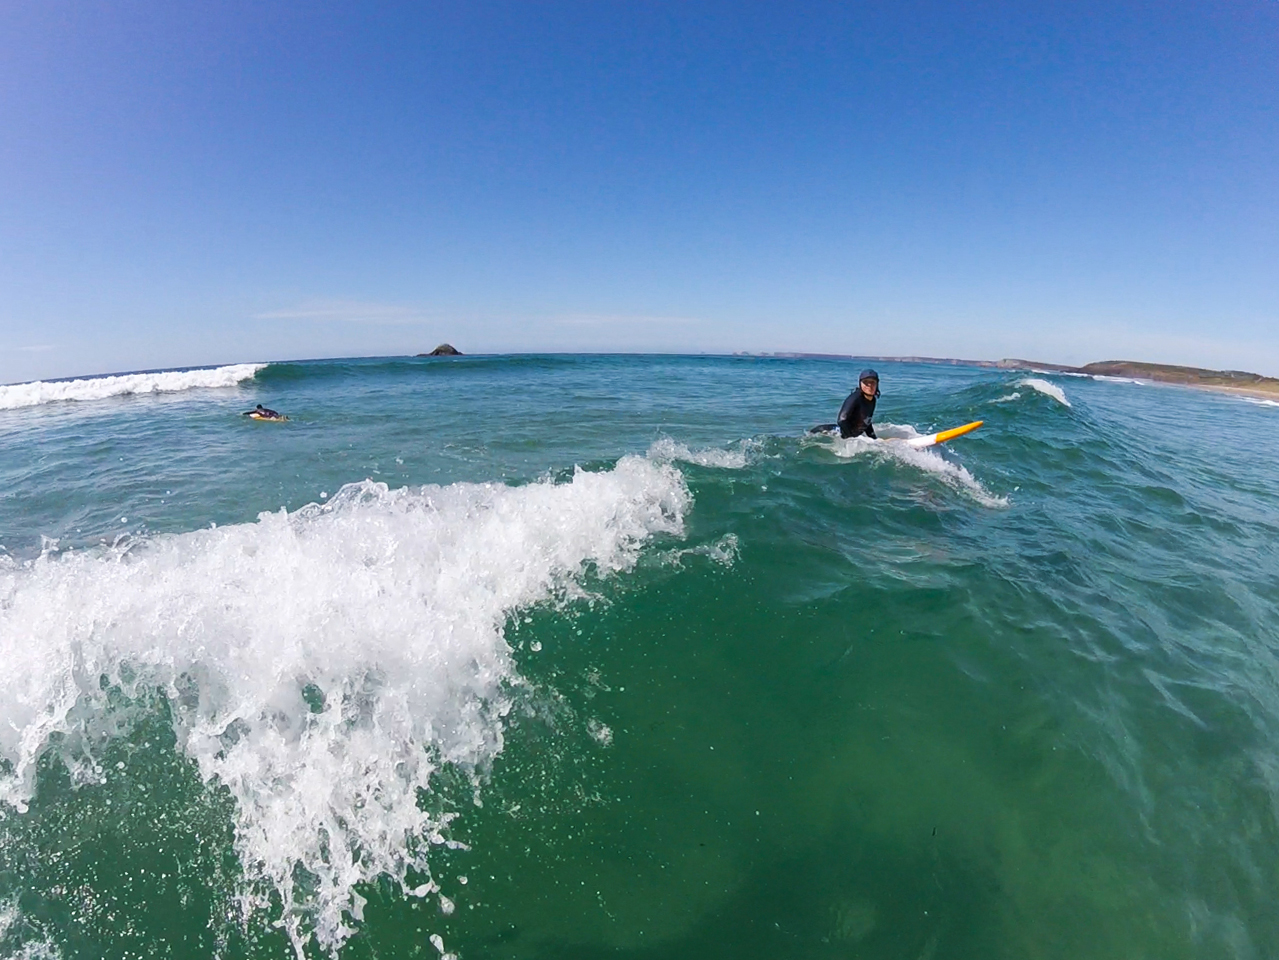 DÃ©couvrez le surf sur les plages de Crozon et Morgat avec l’ecole de surf Magnet Surf School.